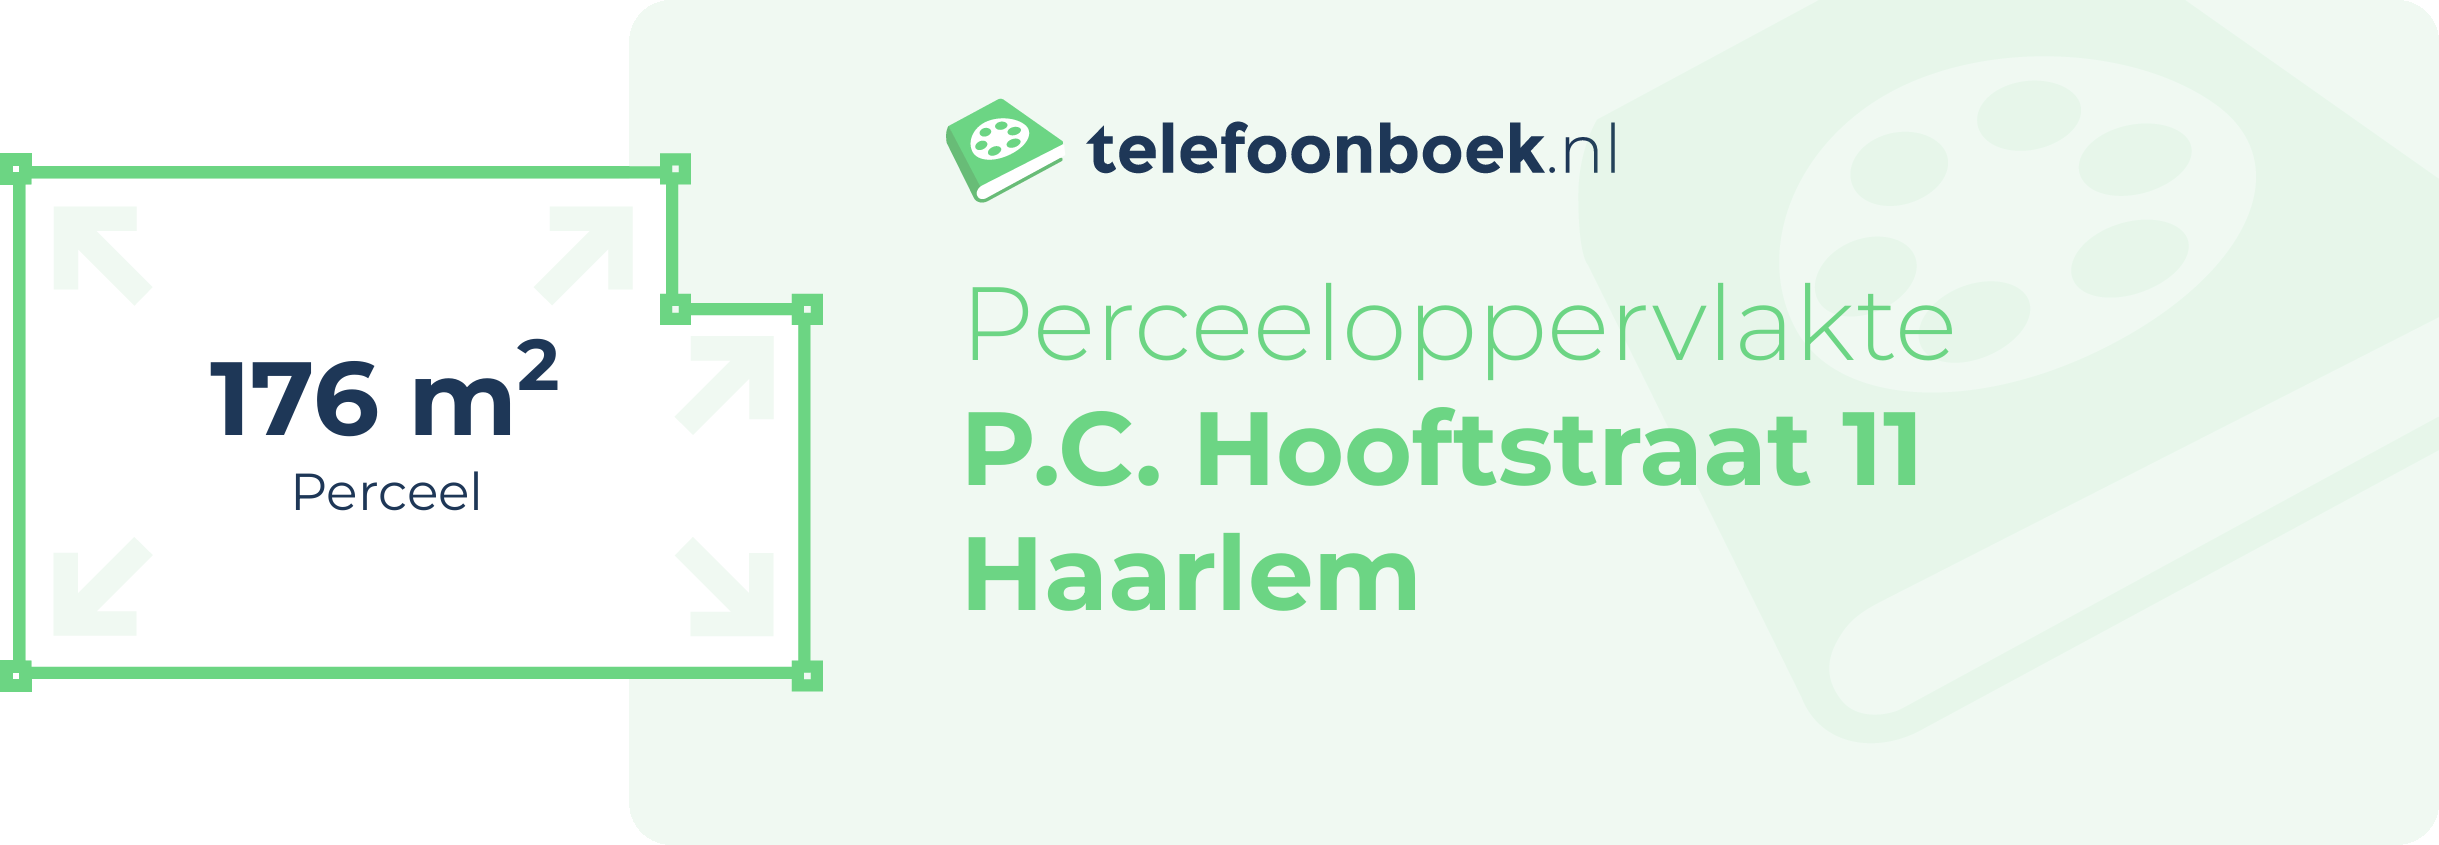 Perceeloppervlakte P.C. Hooftstraat 11 Haarlem